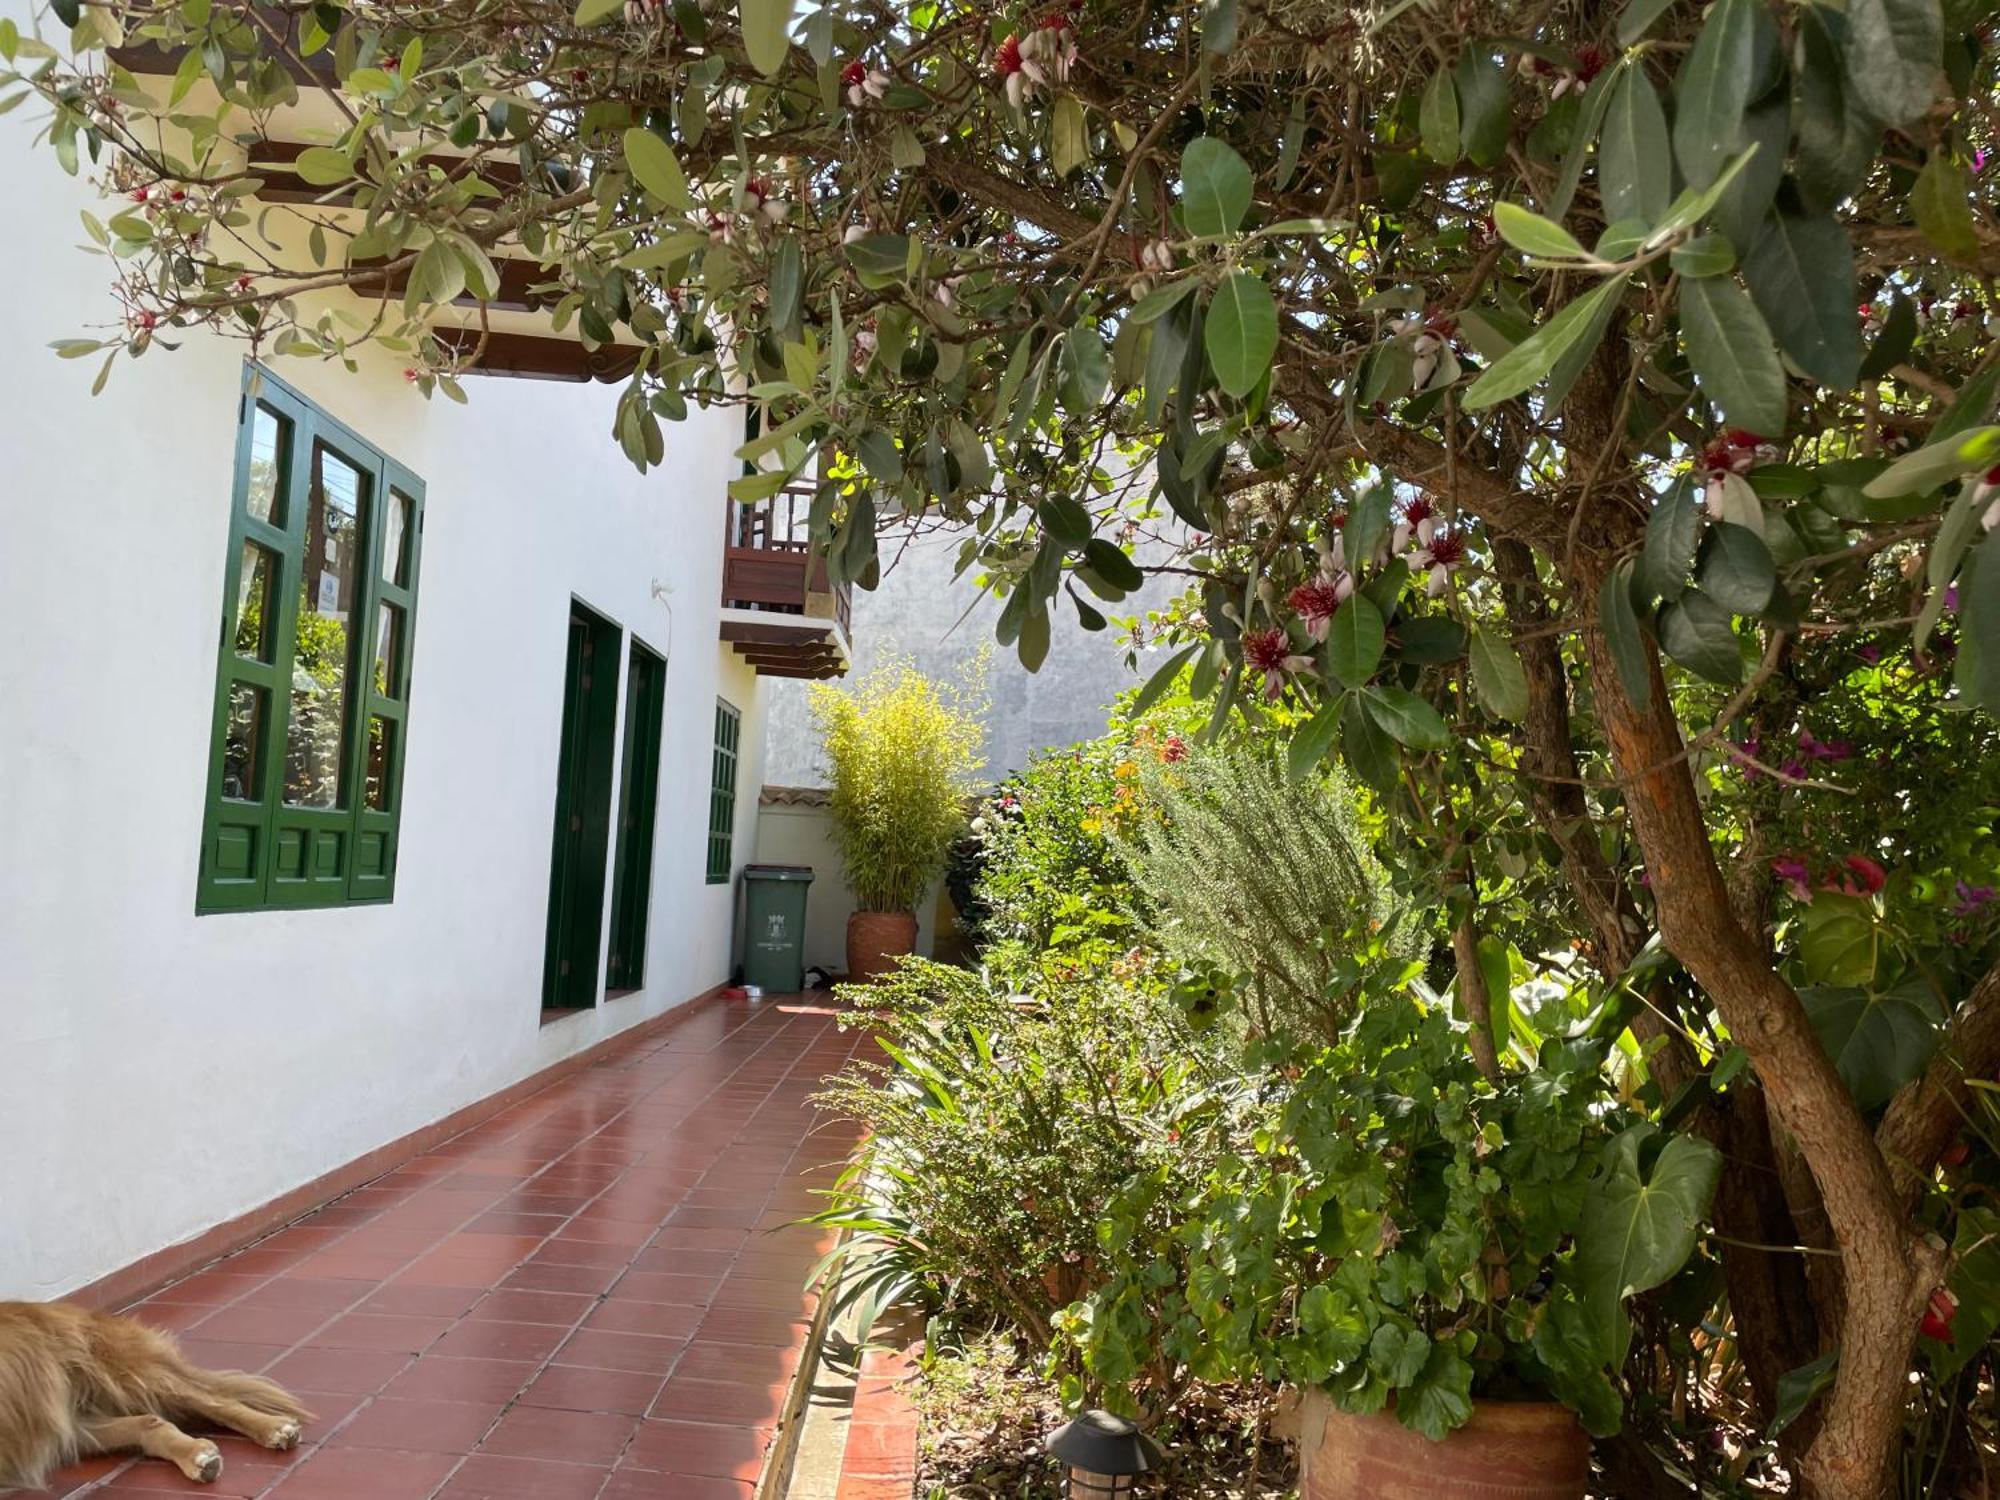 Hostal El Pino Villa de Leyva Buitenkant foto